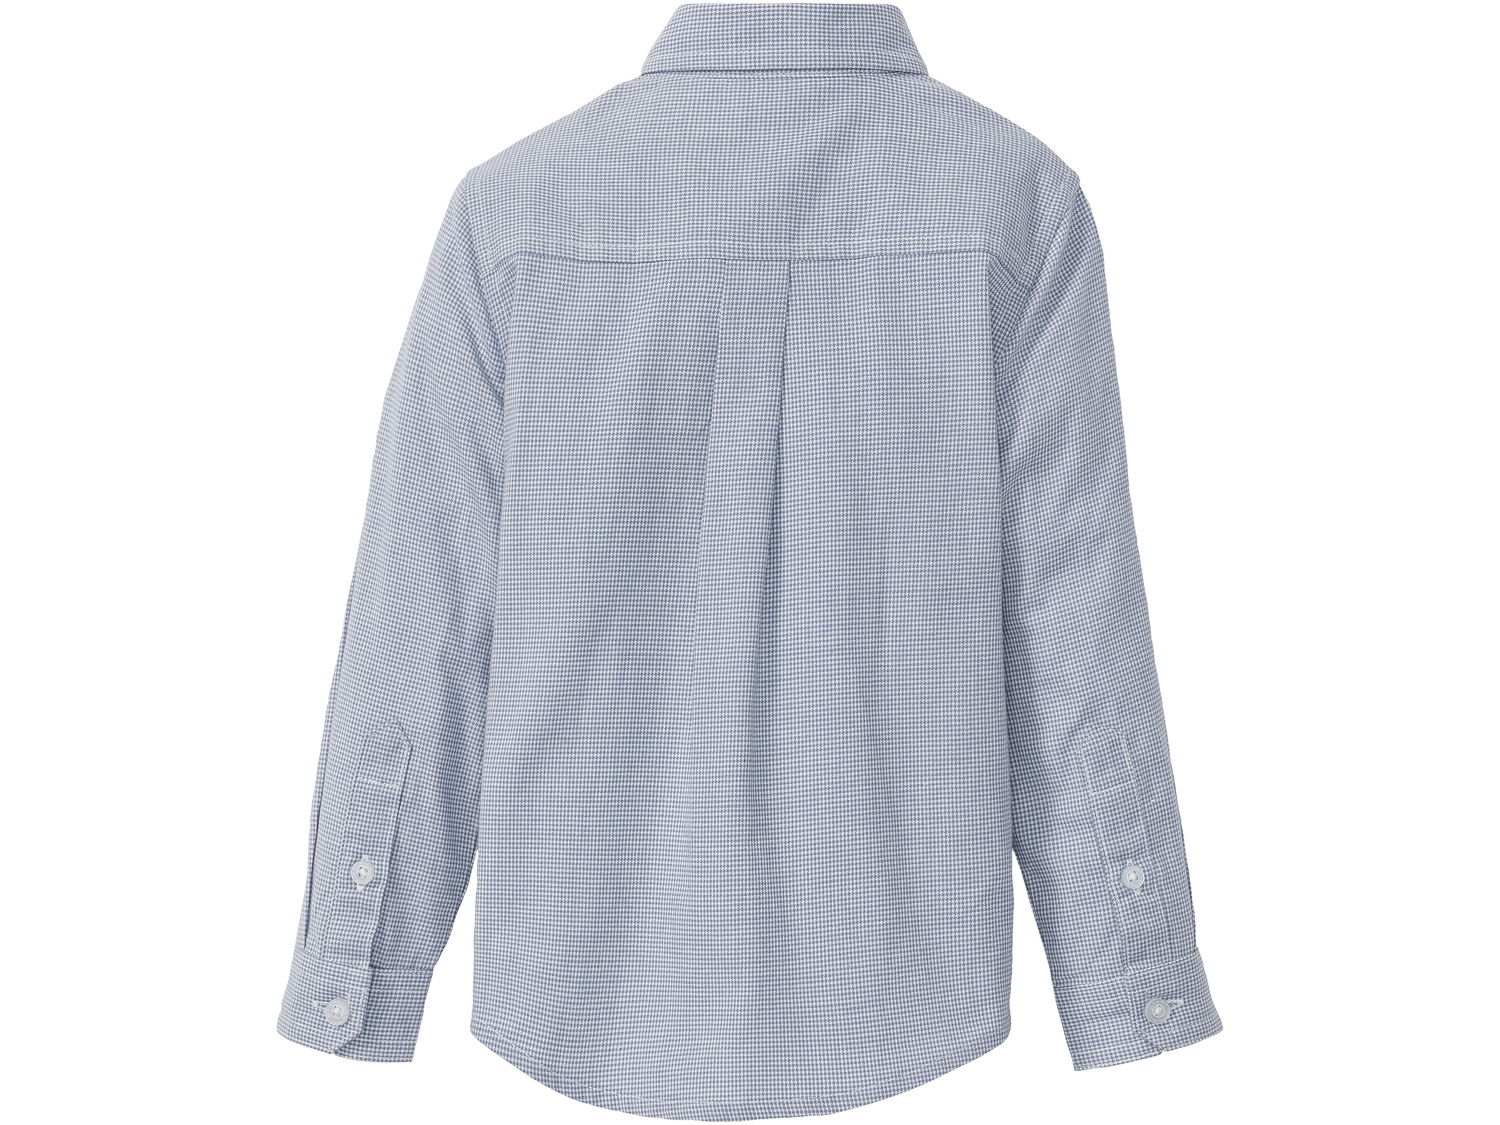 Koszula chłopięca z muchą Lupilu, cena 24,99 PLN 
- koszula: 100% bawełny, mucha: ...